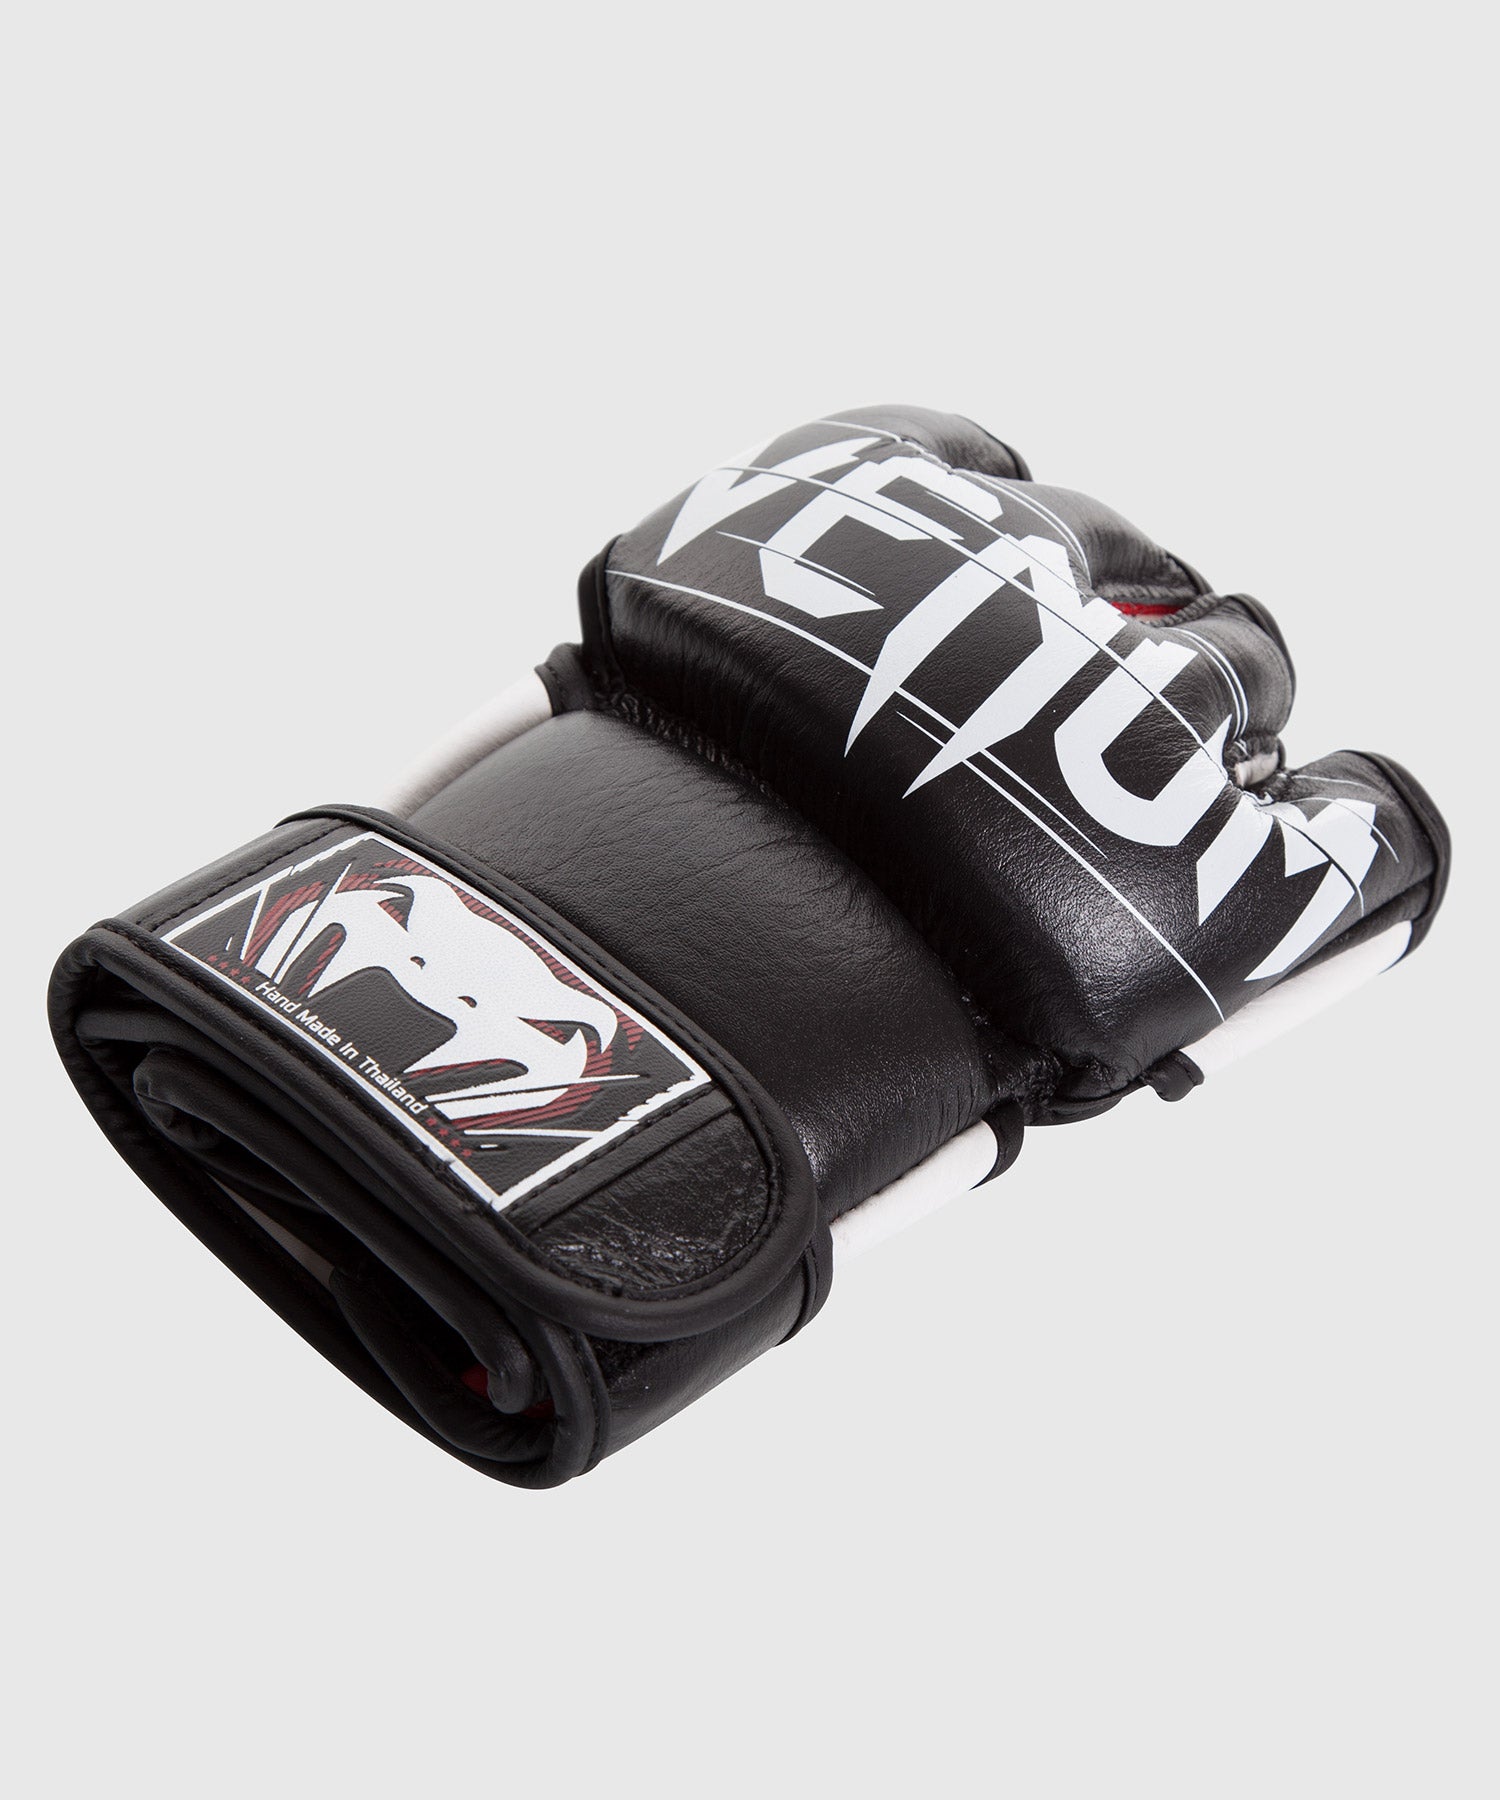 Nos gants Venum Undisputed 2.0 MMA.